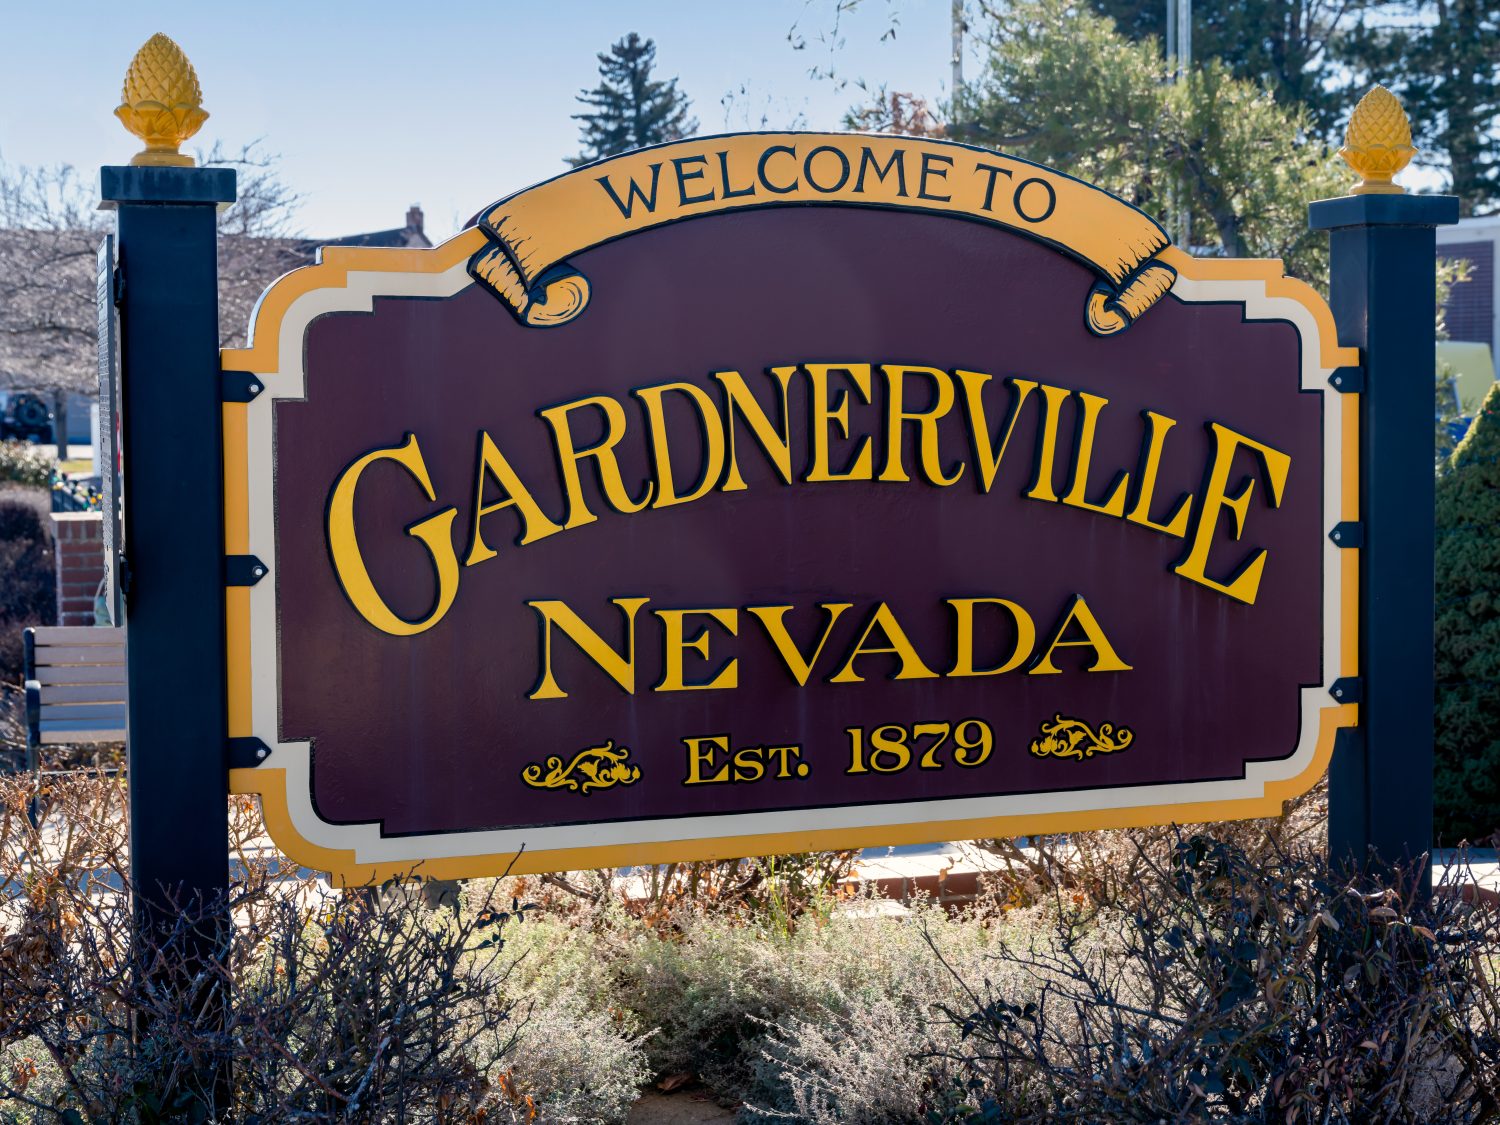 Benvenuti al cartello stradale di Gardnerville Nevada